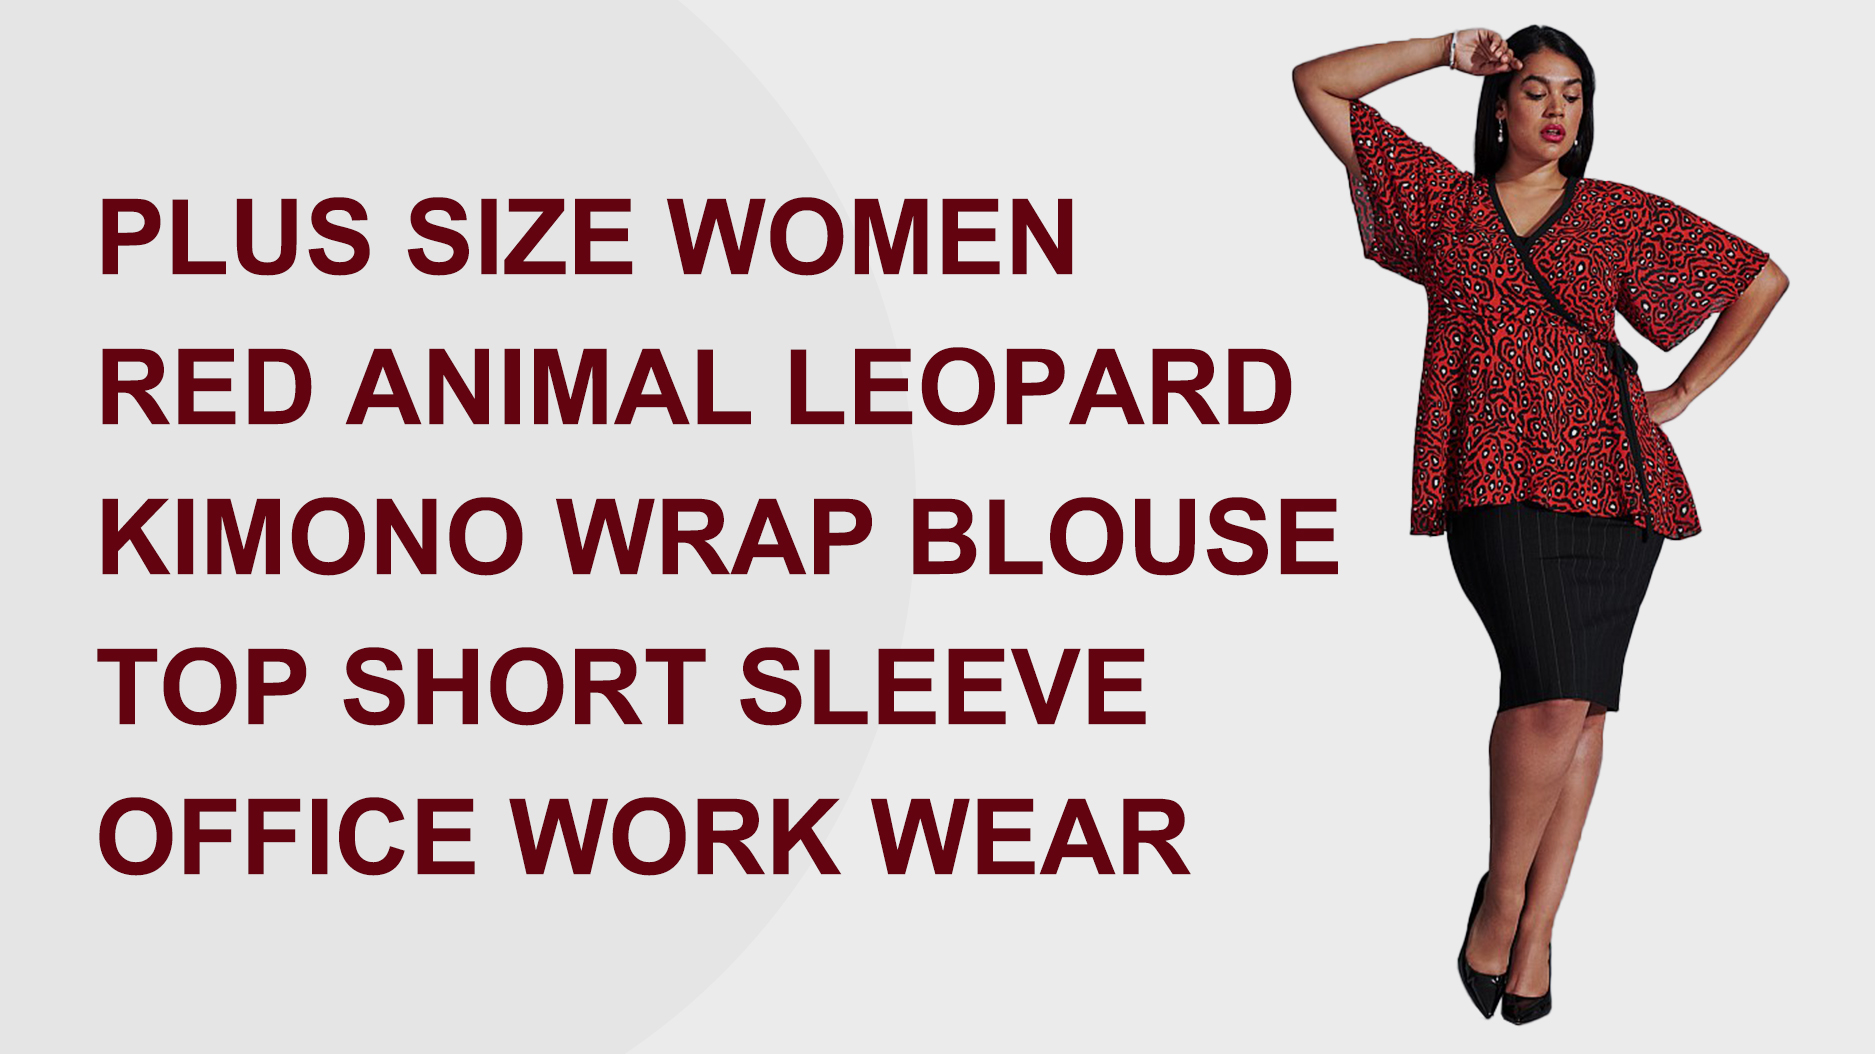 Լավագույն որակի պլյուս չափսի վերնաշապիկ Կանացի կարմիր կենդանական ընձառյուծ կարճաթև գրասենյակային հագուստի գործարան